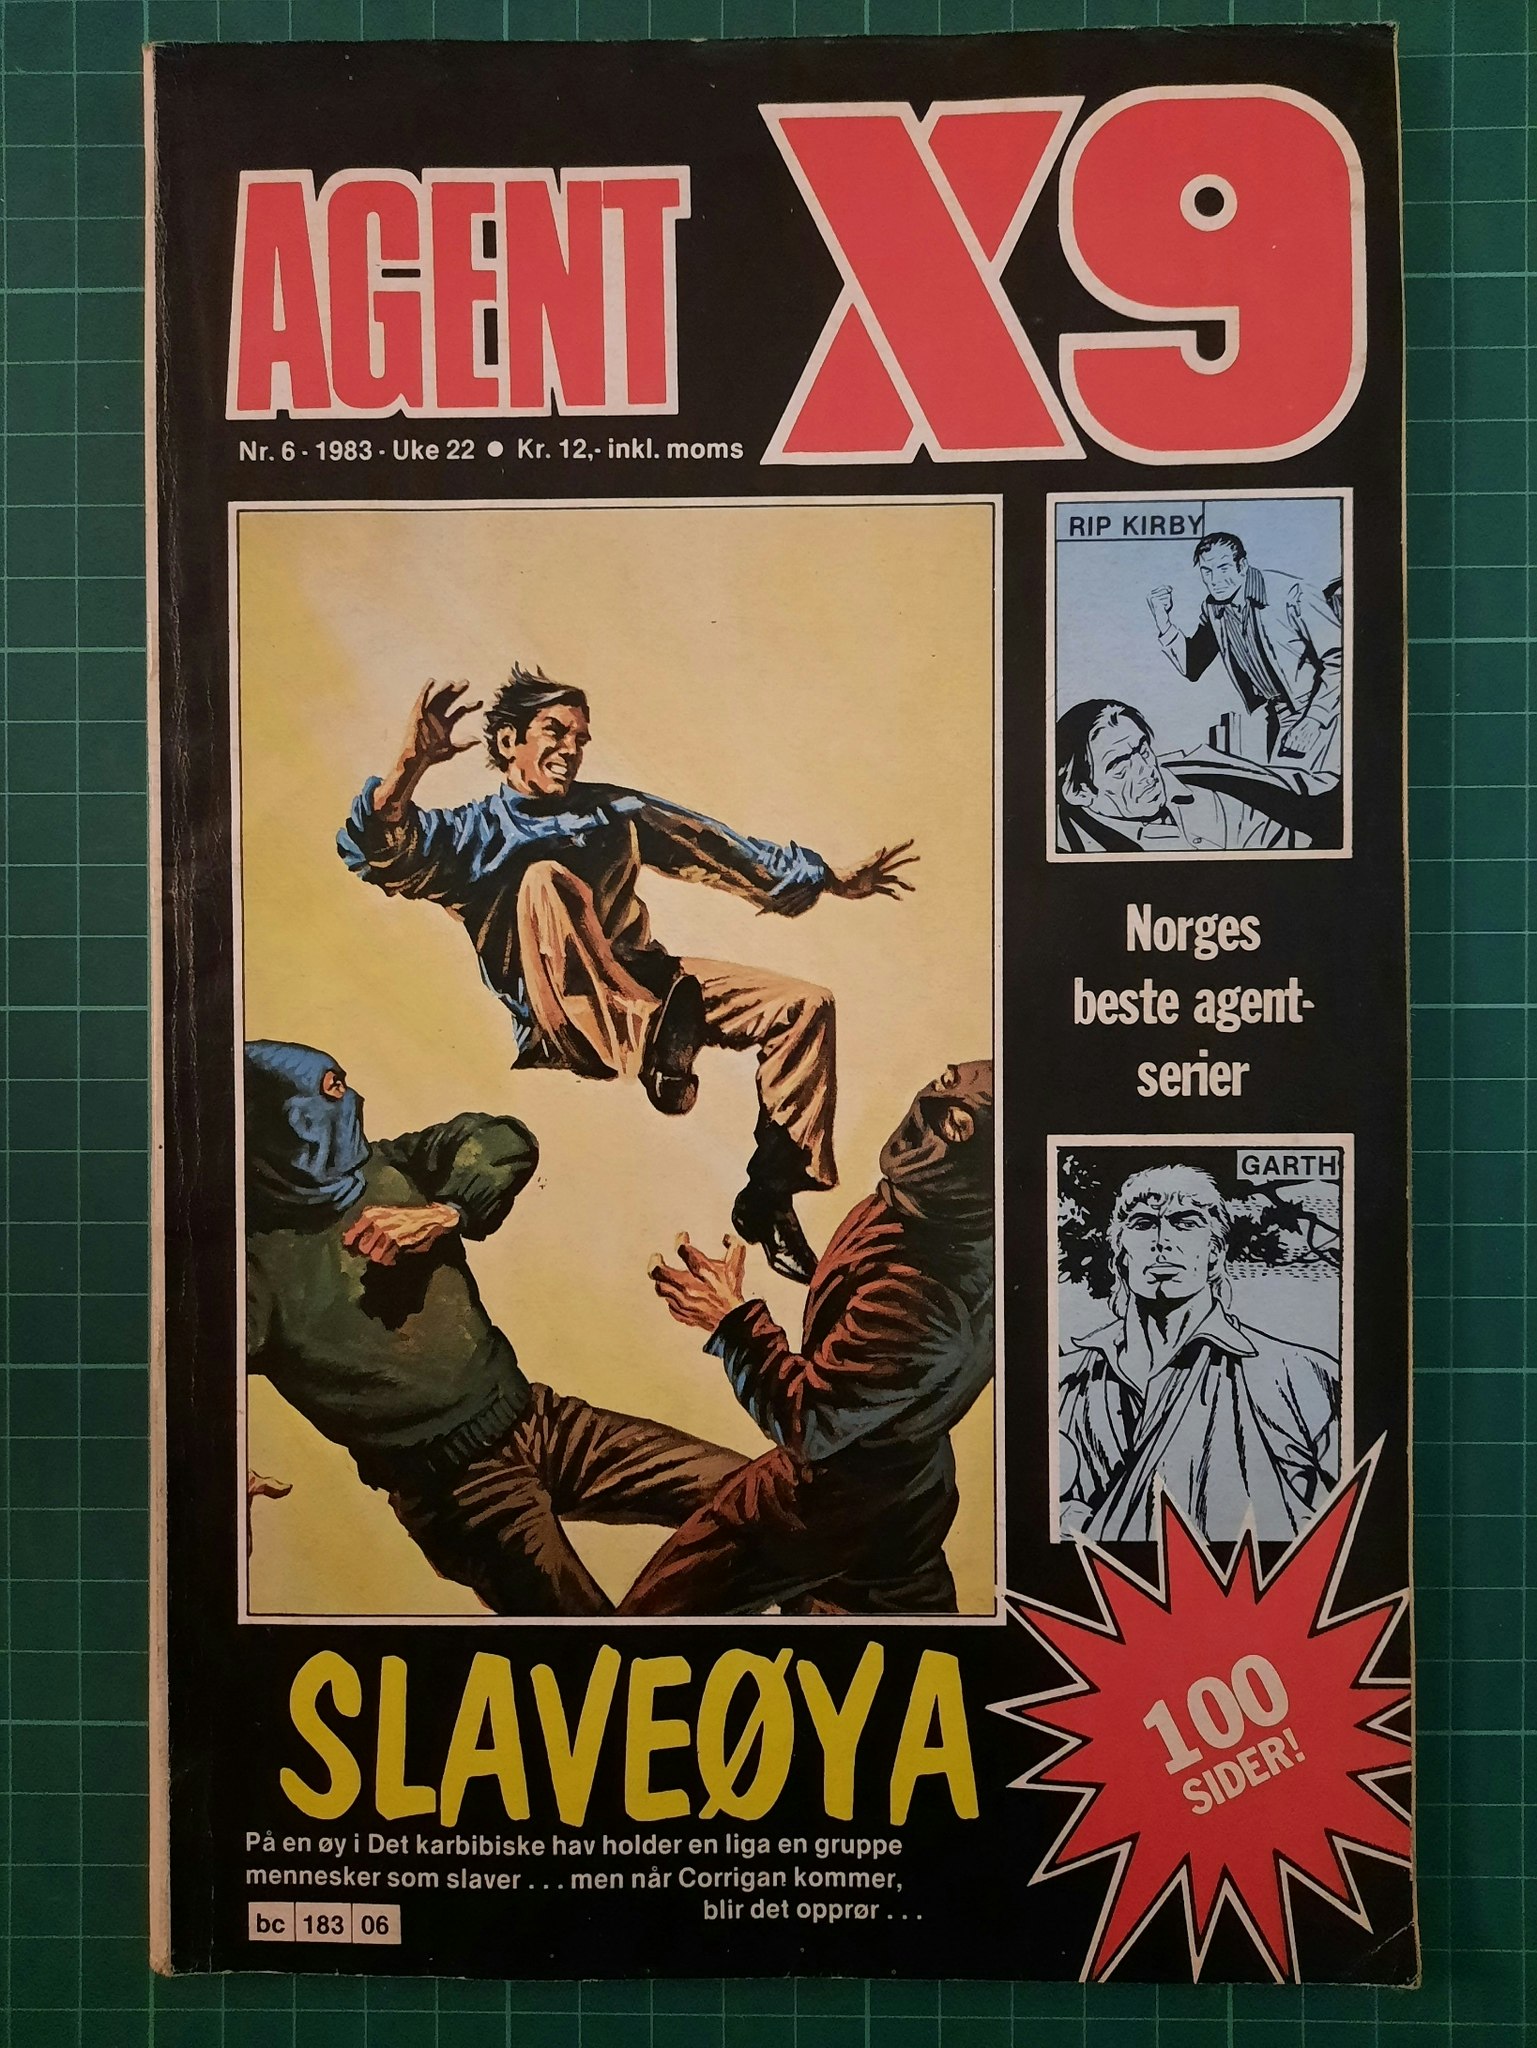 Agent X9 1983 - 06